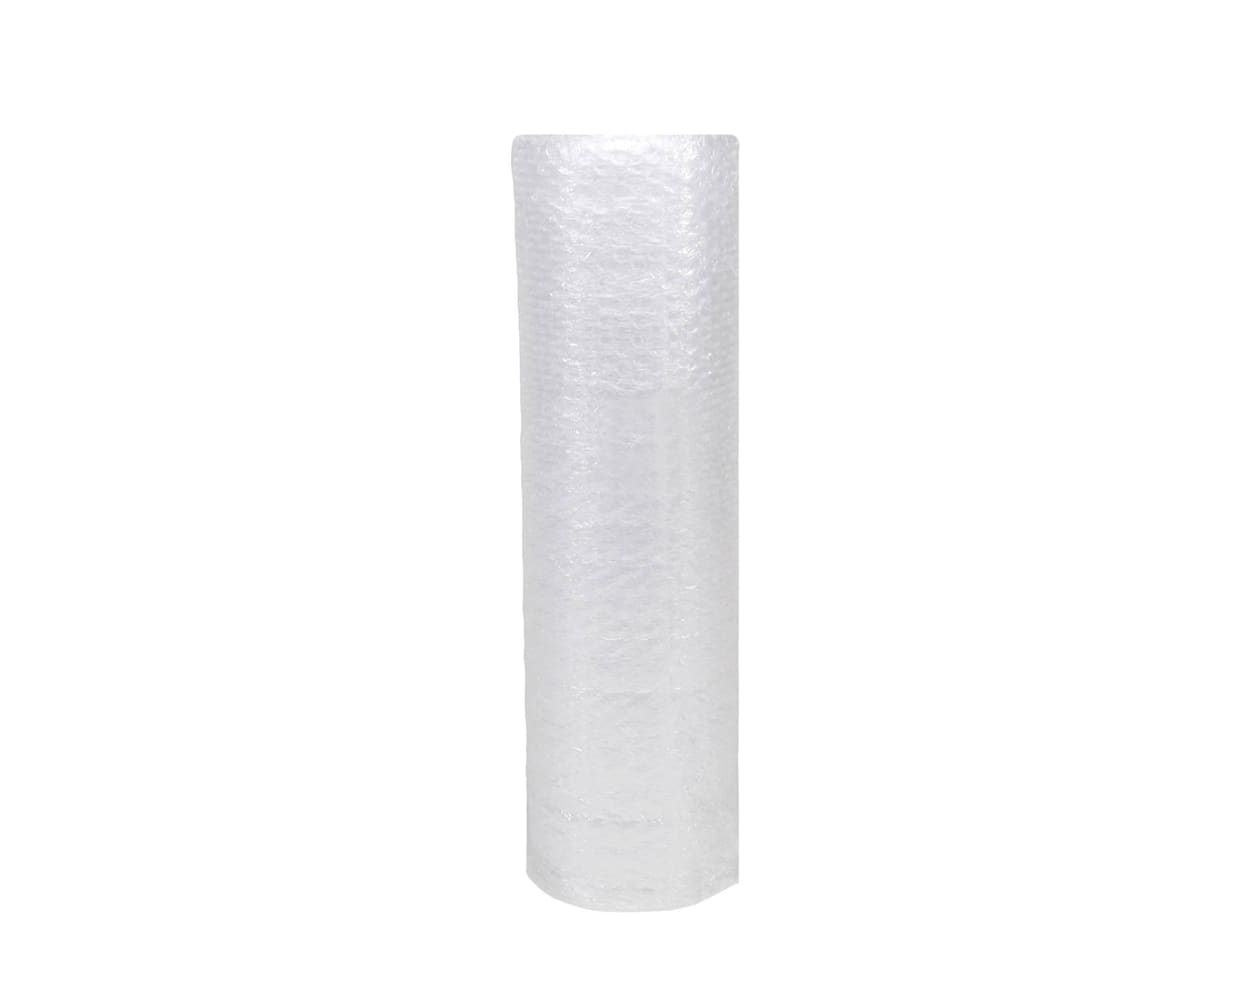 Acomoda Textil – Rollo Burbujas para Embalaje de Plástico. (1x10 Metros)